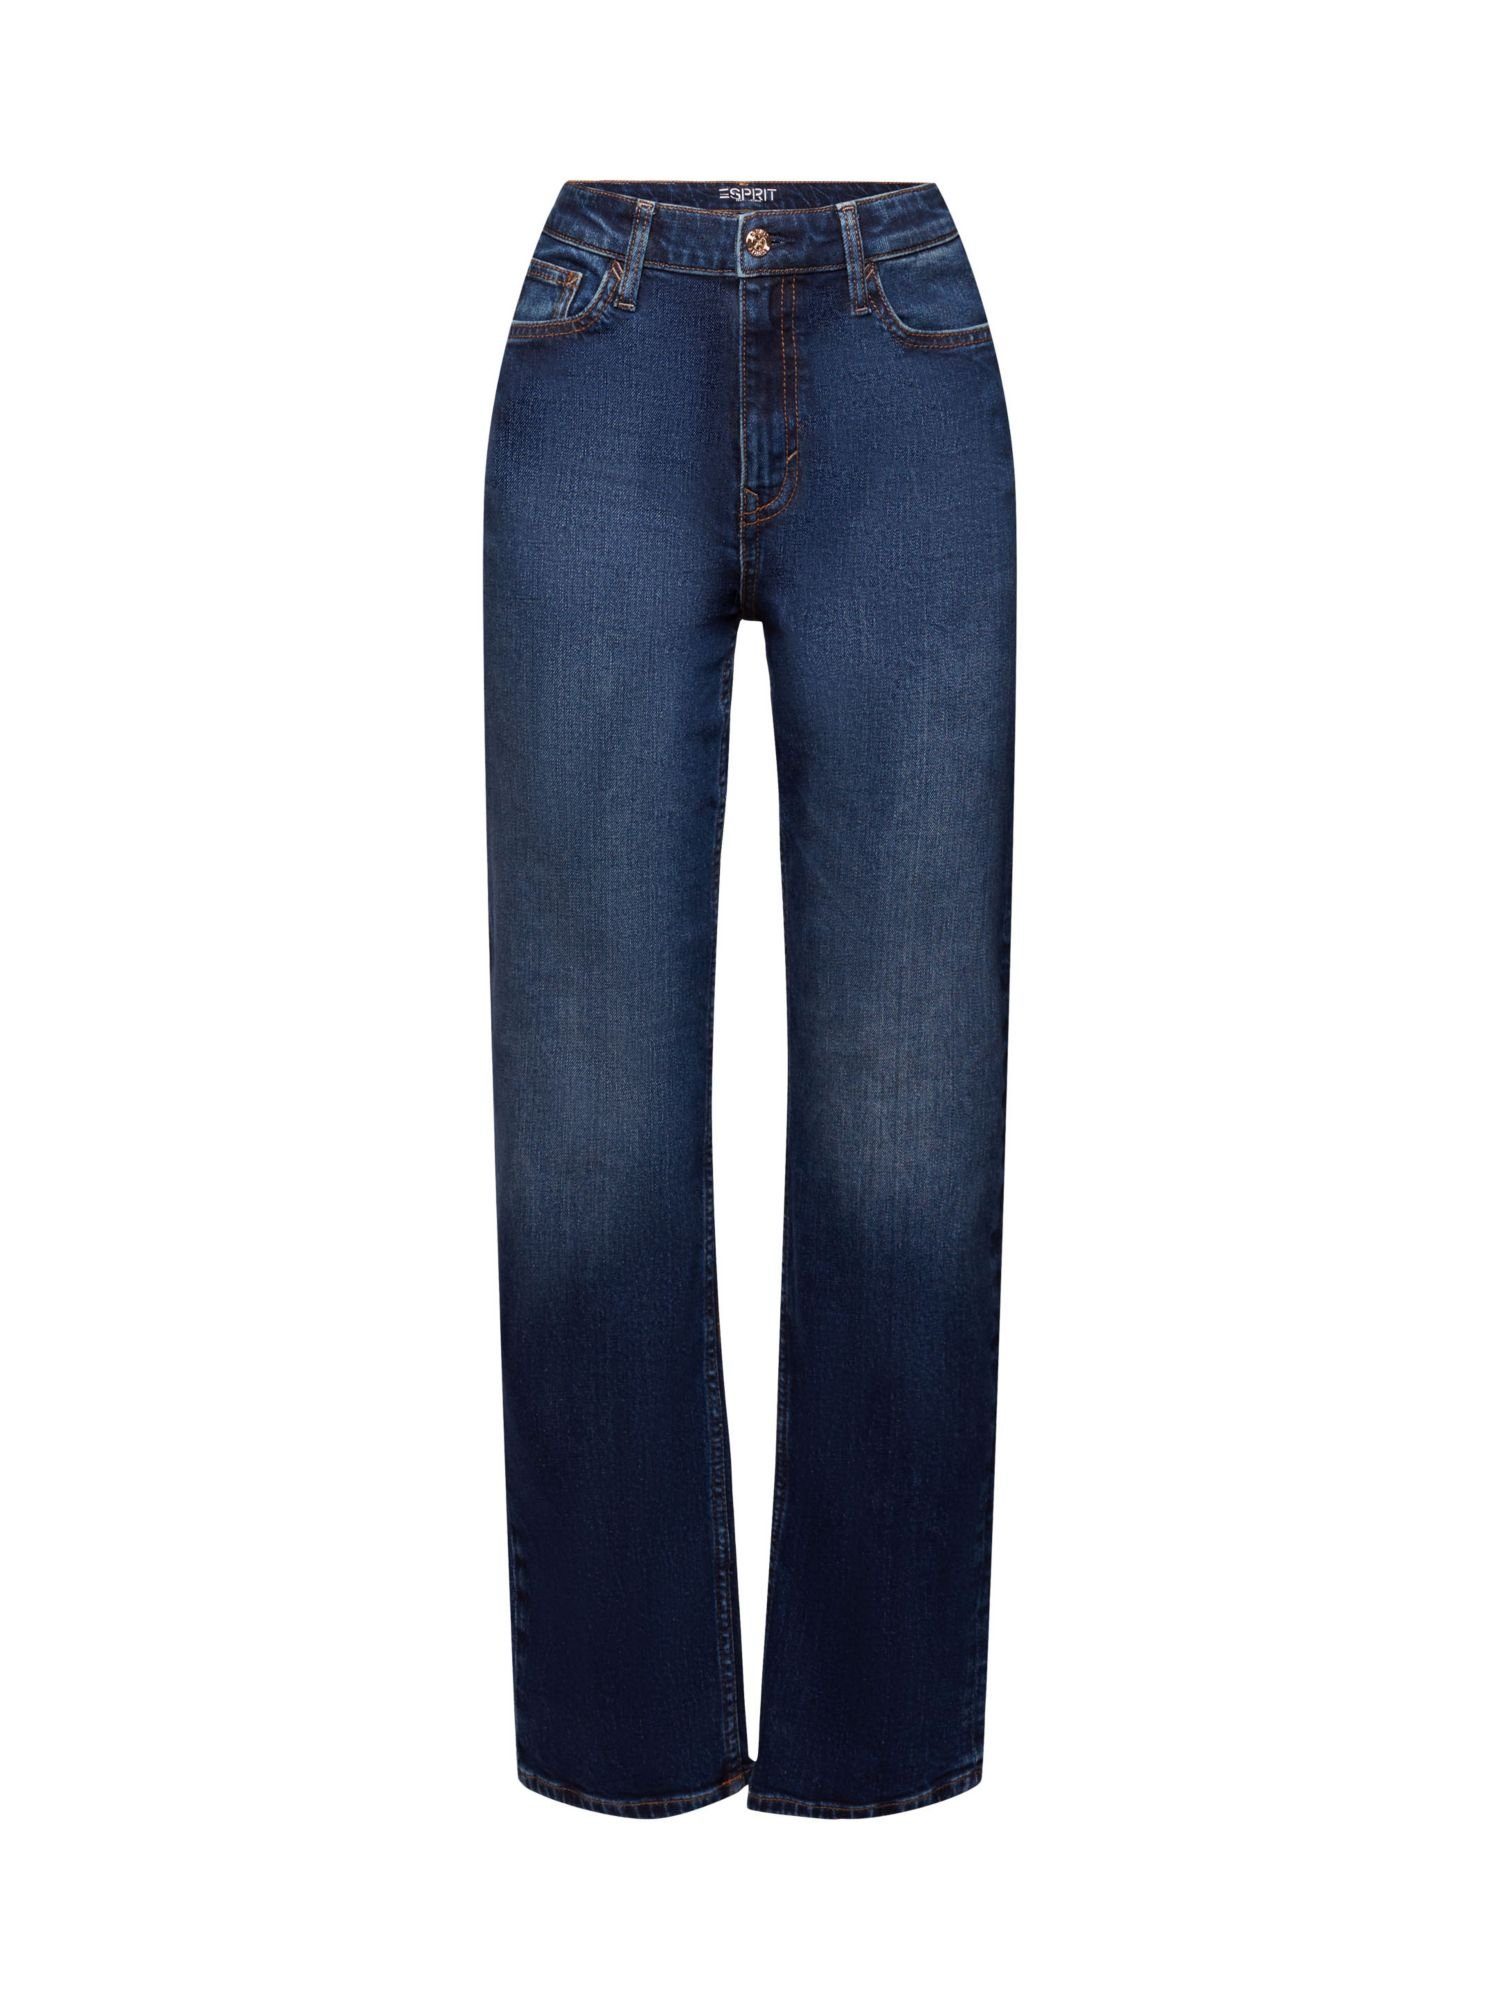 Esprit hohem Straight-Jeans und gerader Passform mit Bund Retro-Jeans